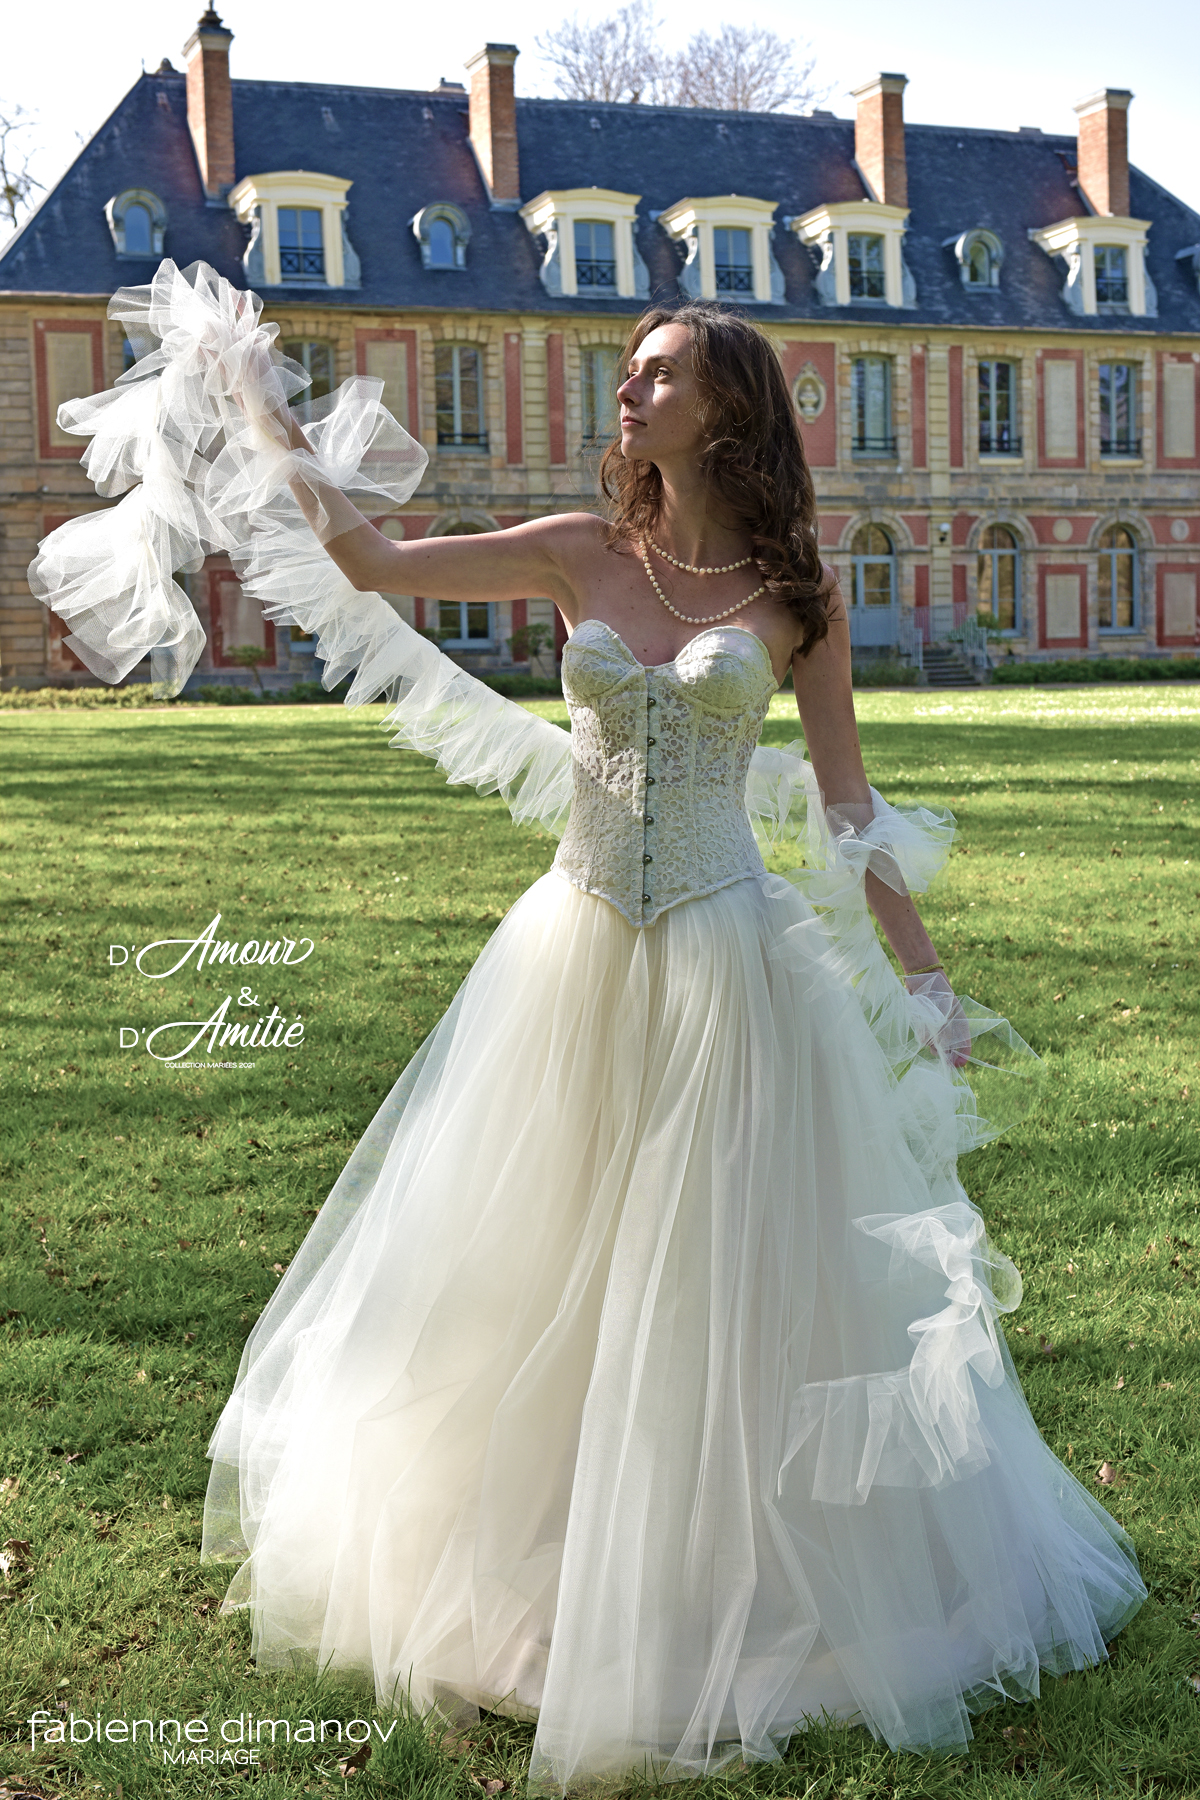 Robe de mariées corset princesse sur mesure - création unique personnalisée - D'Amour & D'Amitié - Fabienne Dimanov Mariage